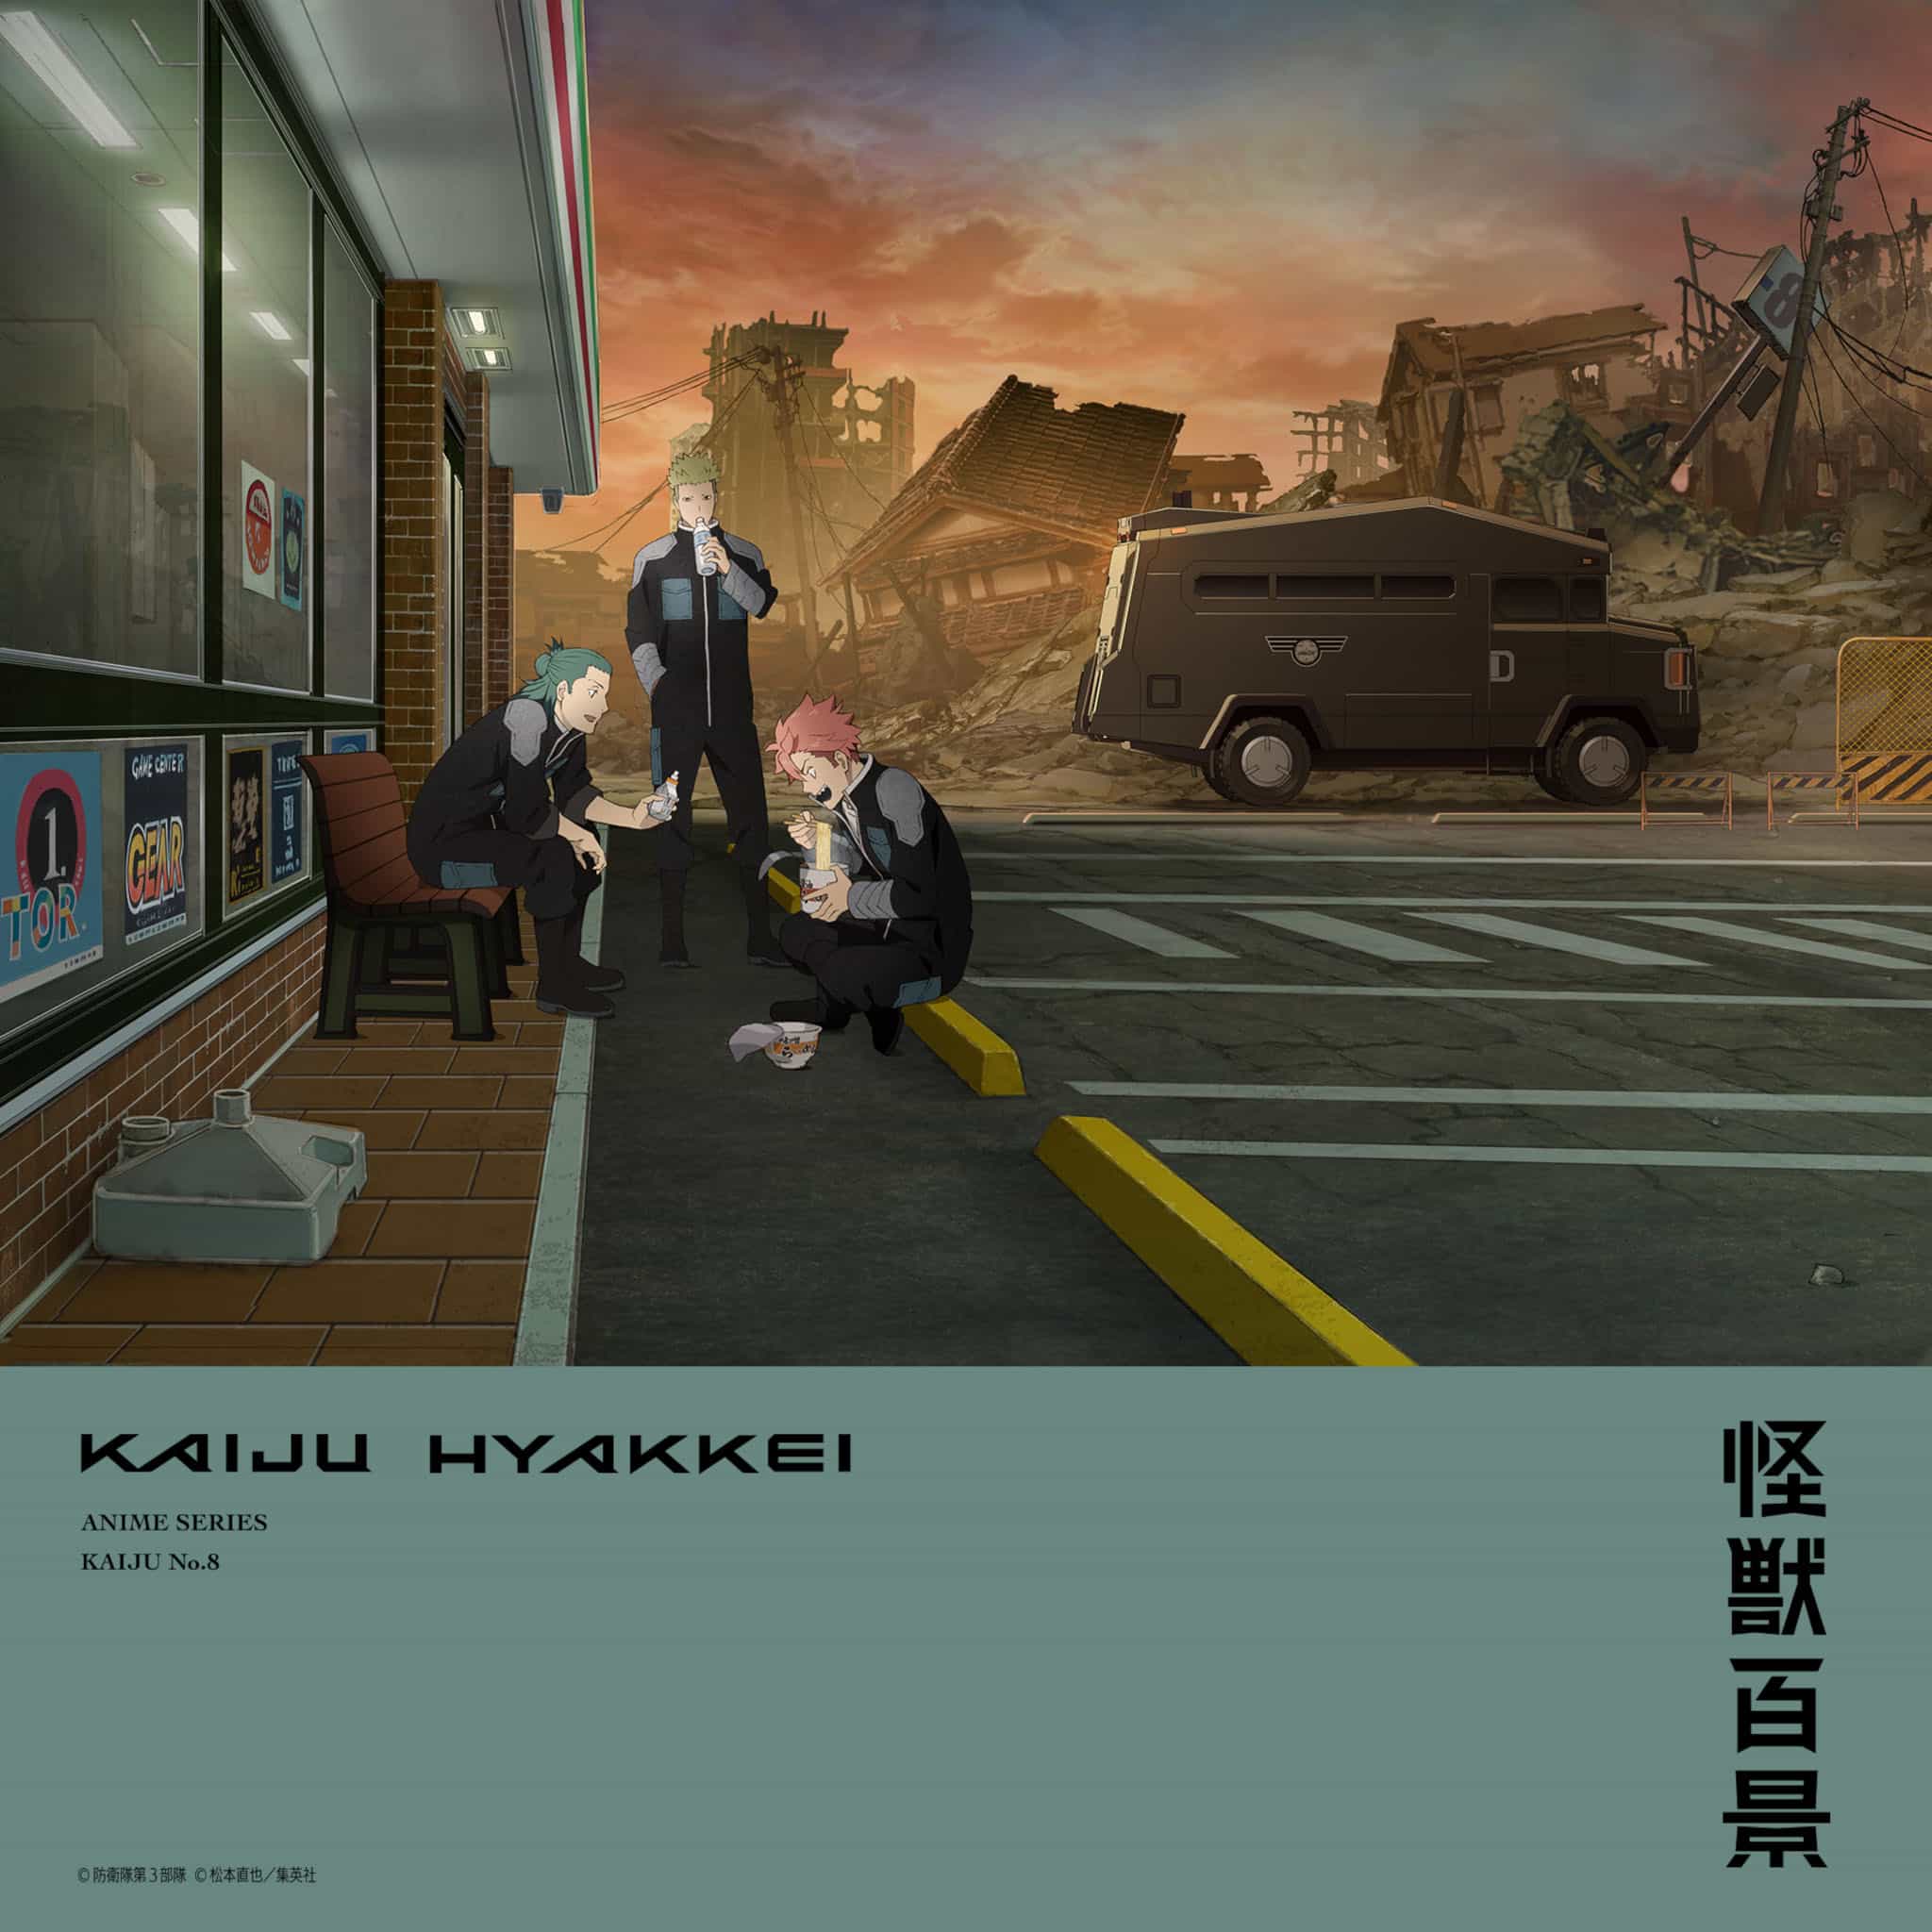 Cinquième visuel teaser pour l'anime Kaiju No. 8